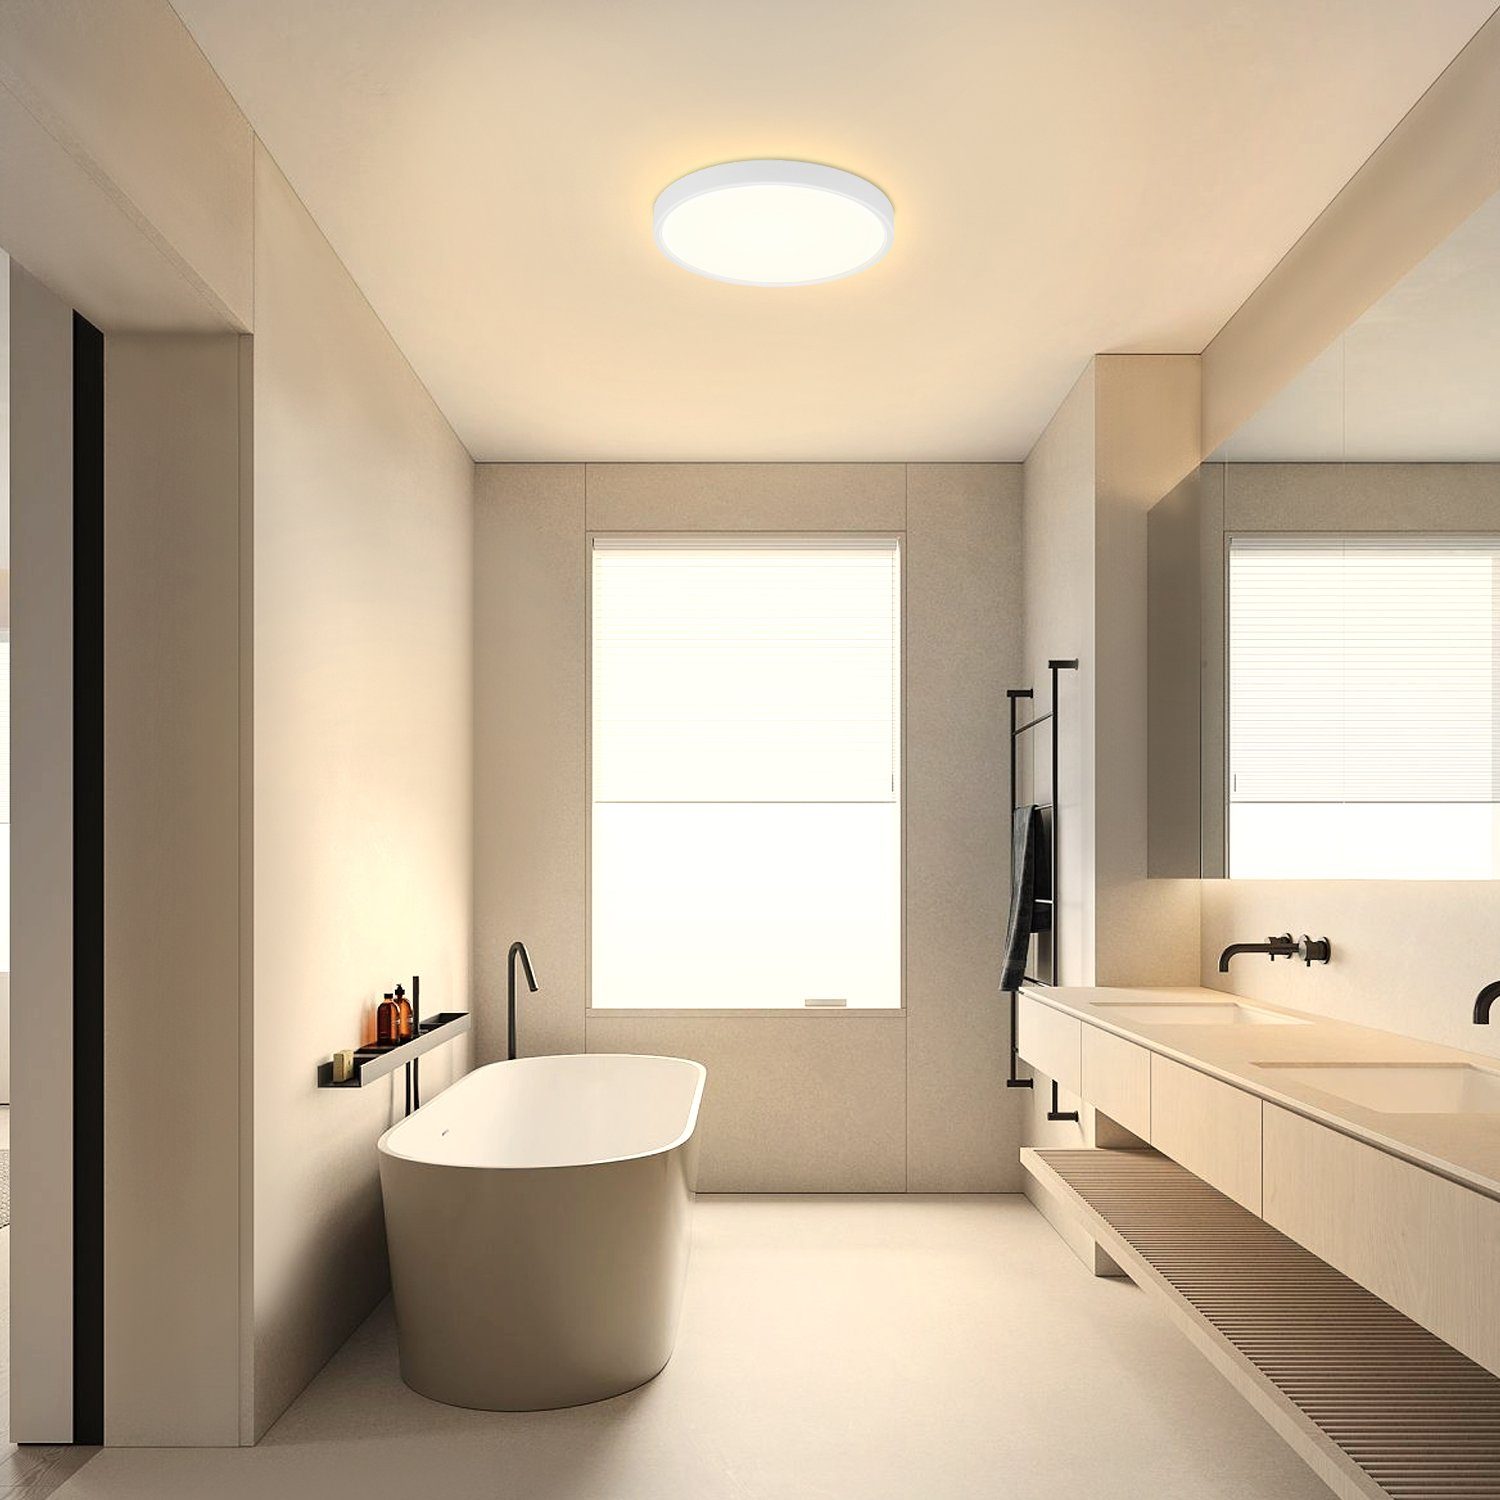 Flach Schwarz * Badezimmer Klein Panel 8W, CM 17 17 Flur, Schlafzimmer integriert, LED Deckenbeleuchtung, LED Warmweiß, IP44 Küche Nettlife für Deckenlampe 2.5 * fest Wasserdicht,